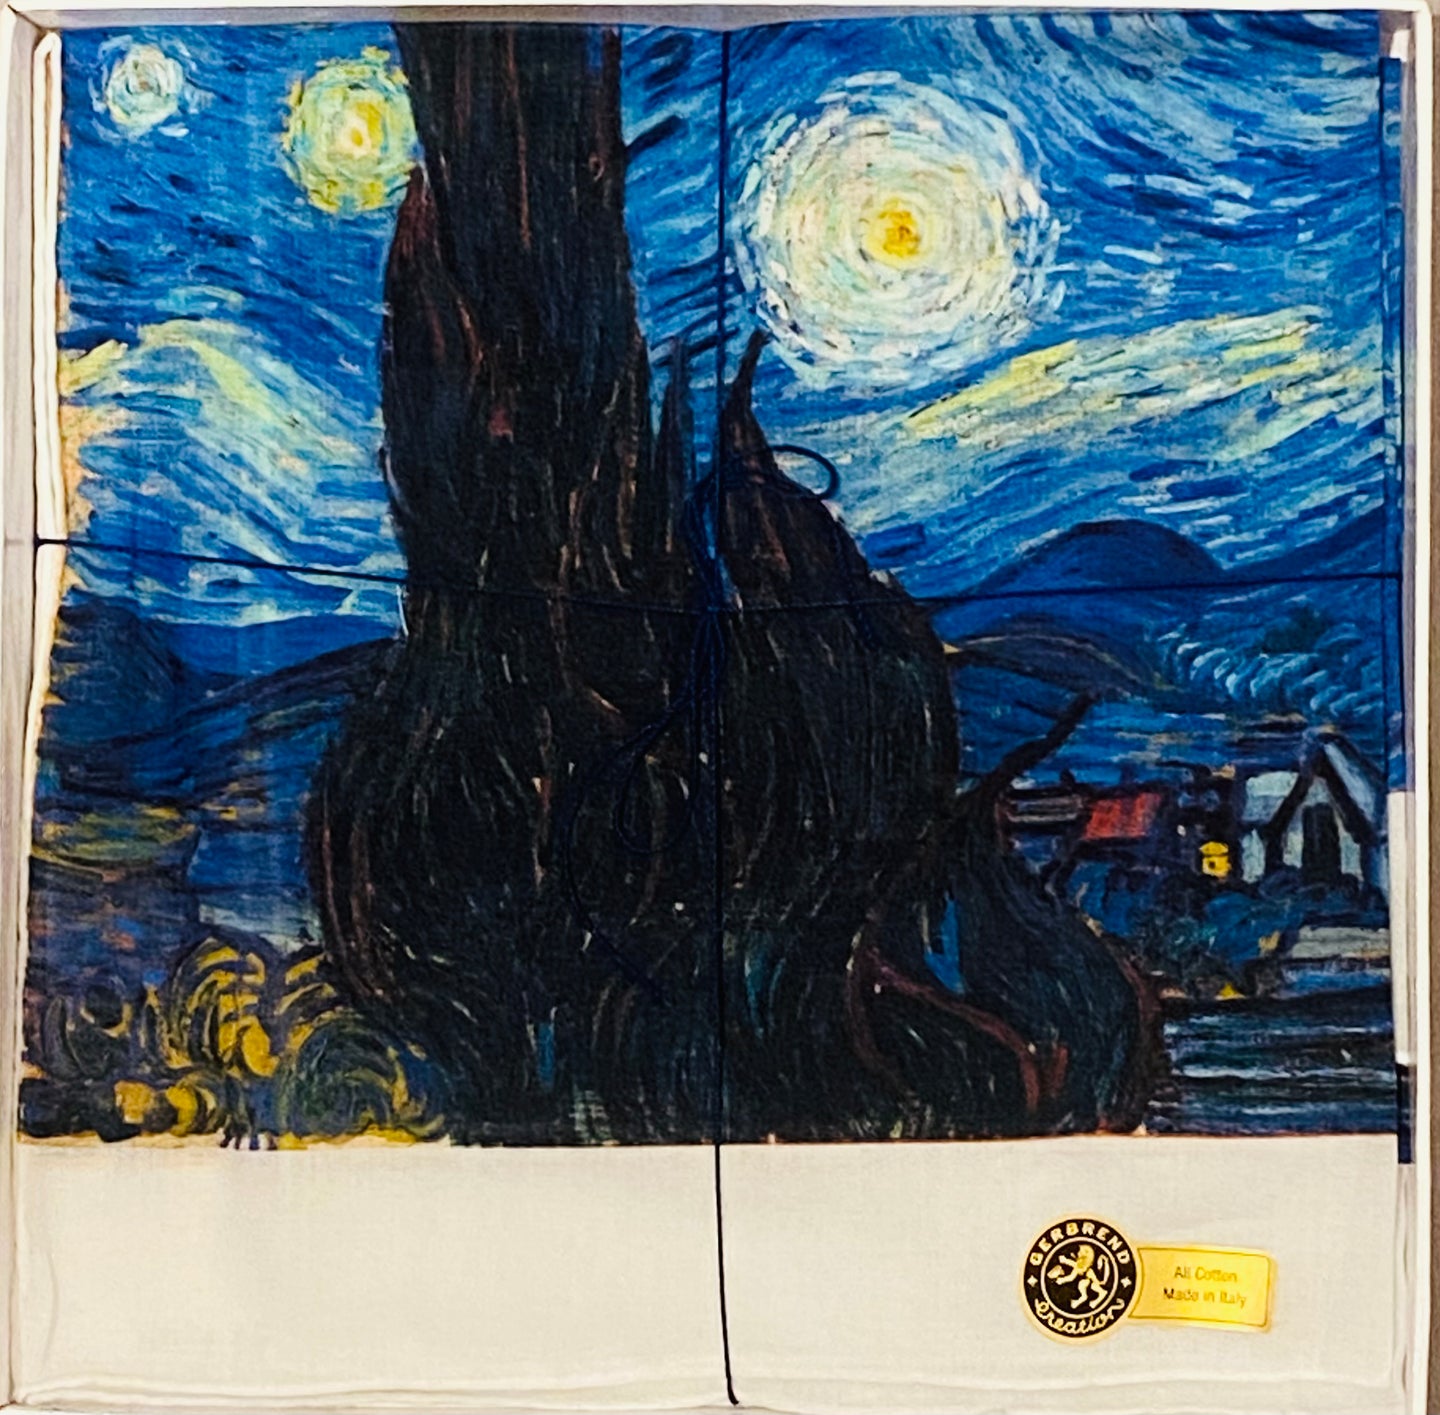 Van Gogh 